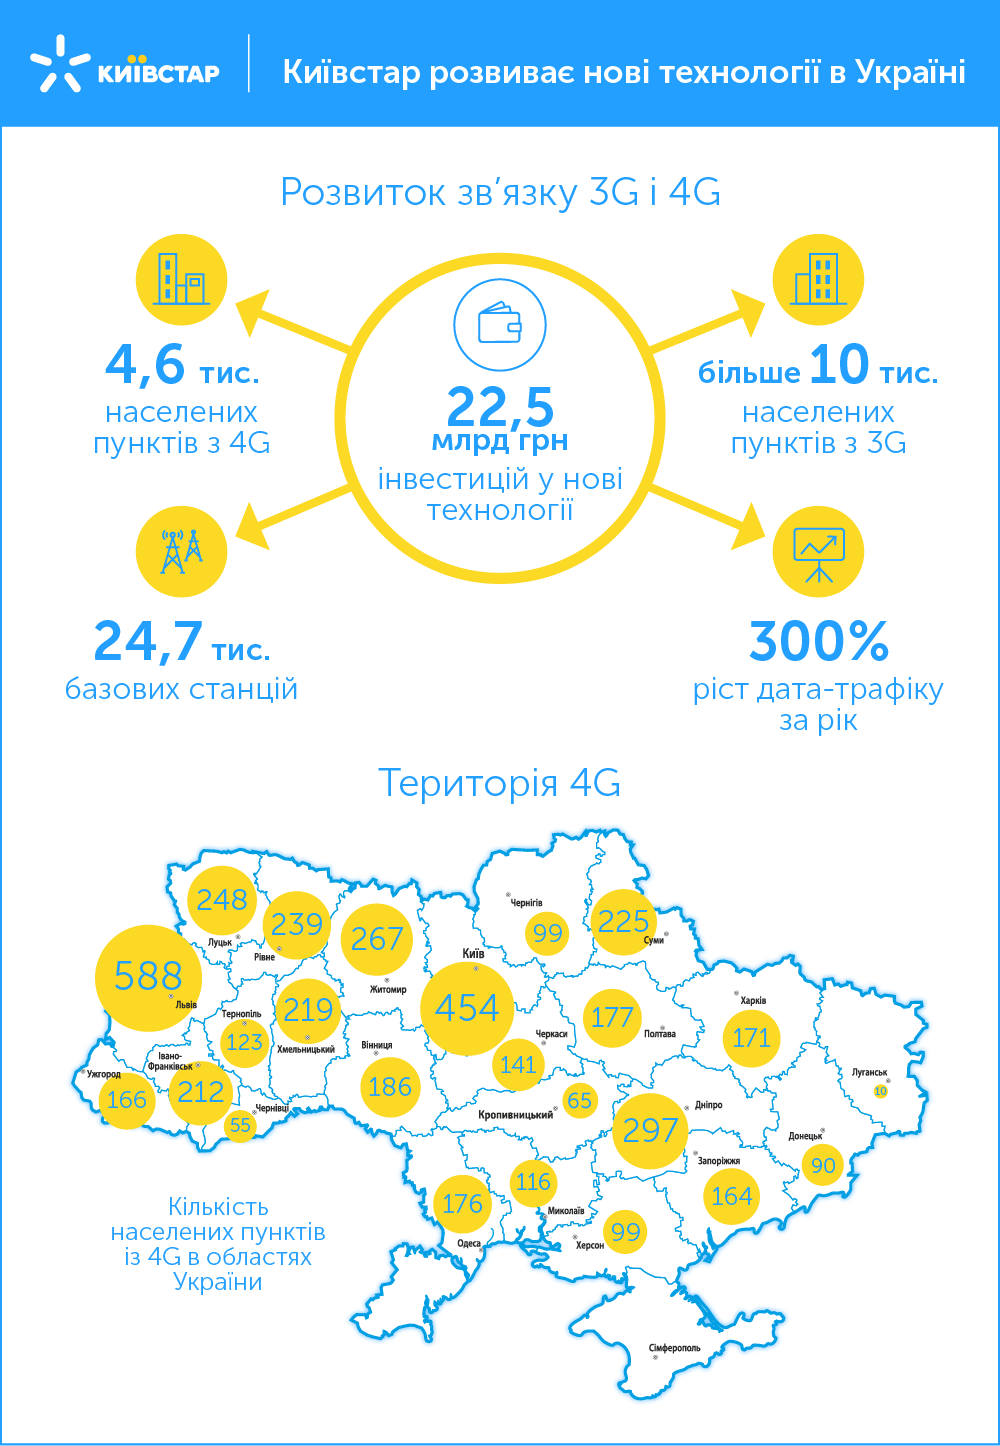 22,5 млрд грн інвестицій, 300% ріст інтернет трафіку – успіхи Київстар у розвитку нових технологій 